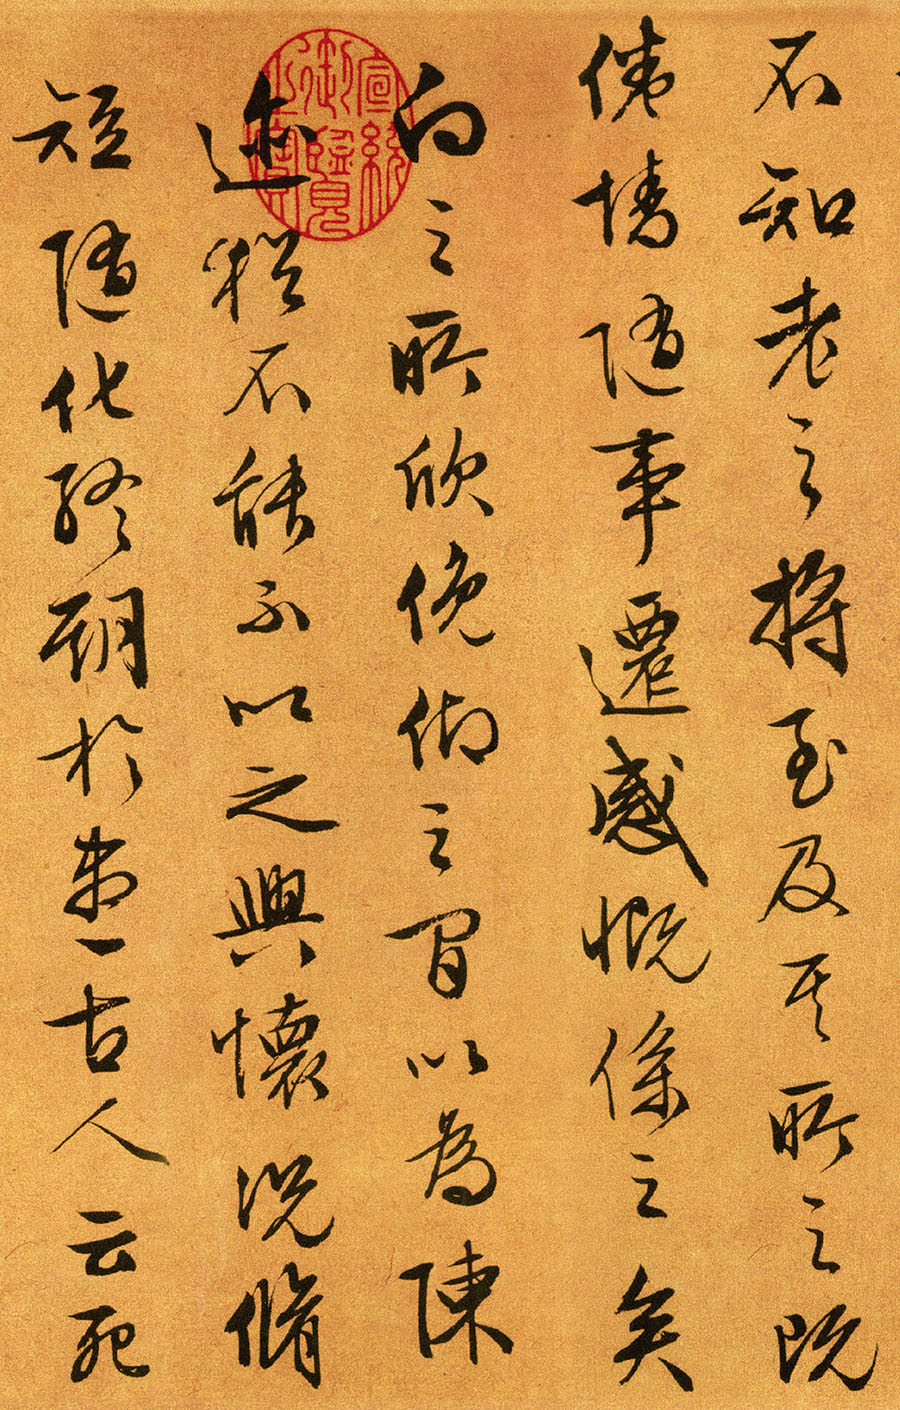 文徵明《行草书兰亭序》-台北故宫博物院藏(图5)